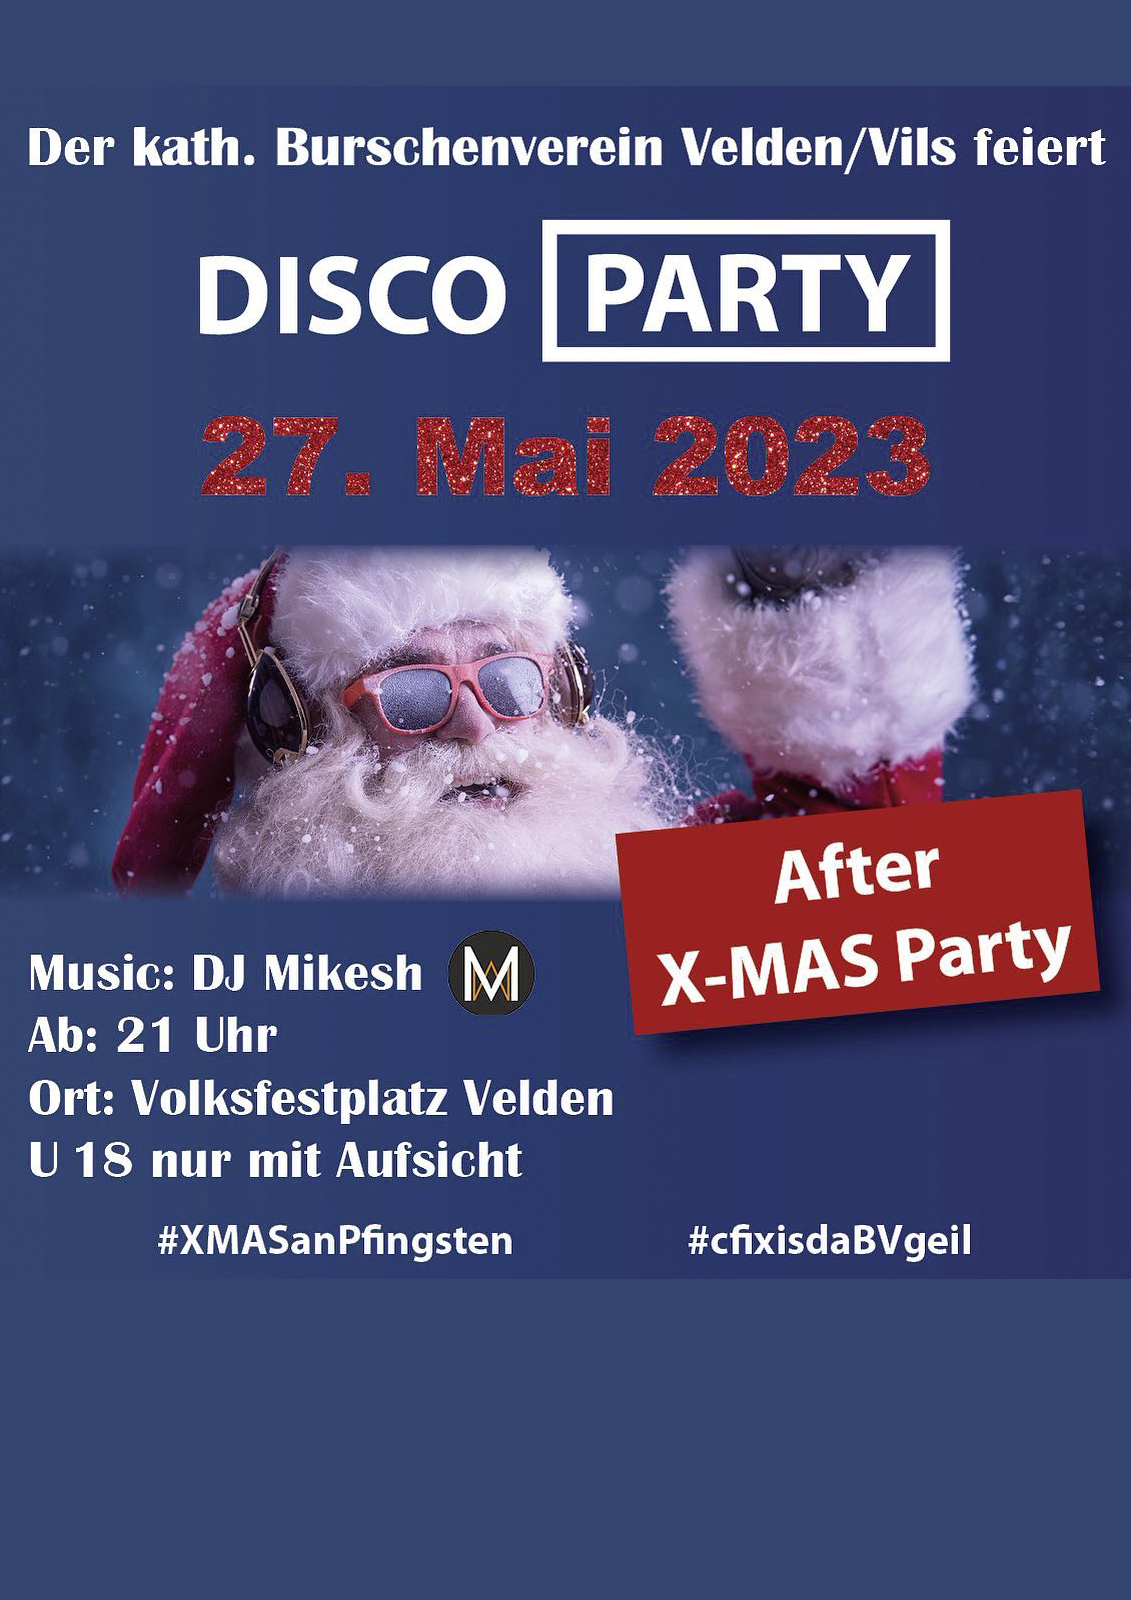 Plakat zur XMas-Party des Burschenvereins Velden im Mai 2023